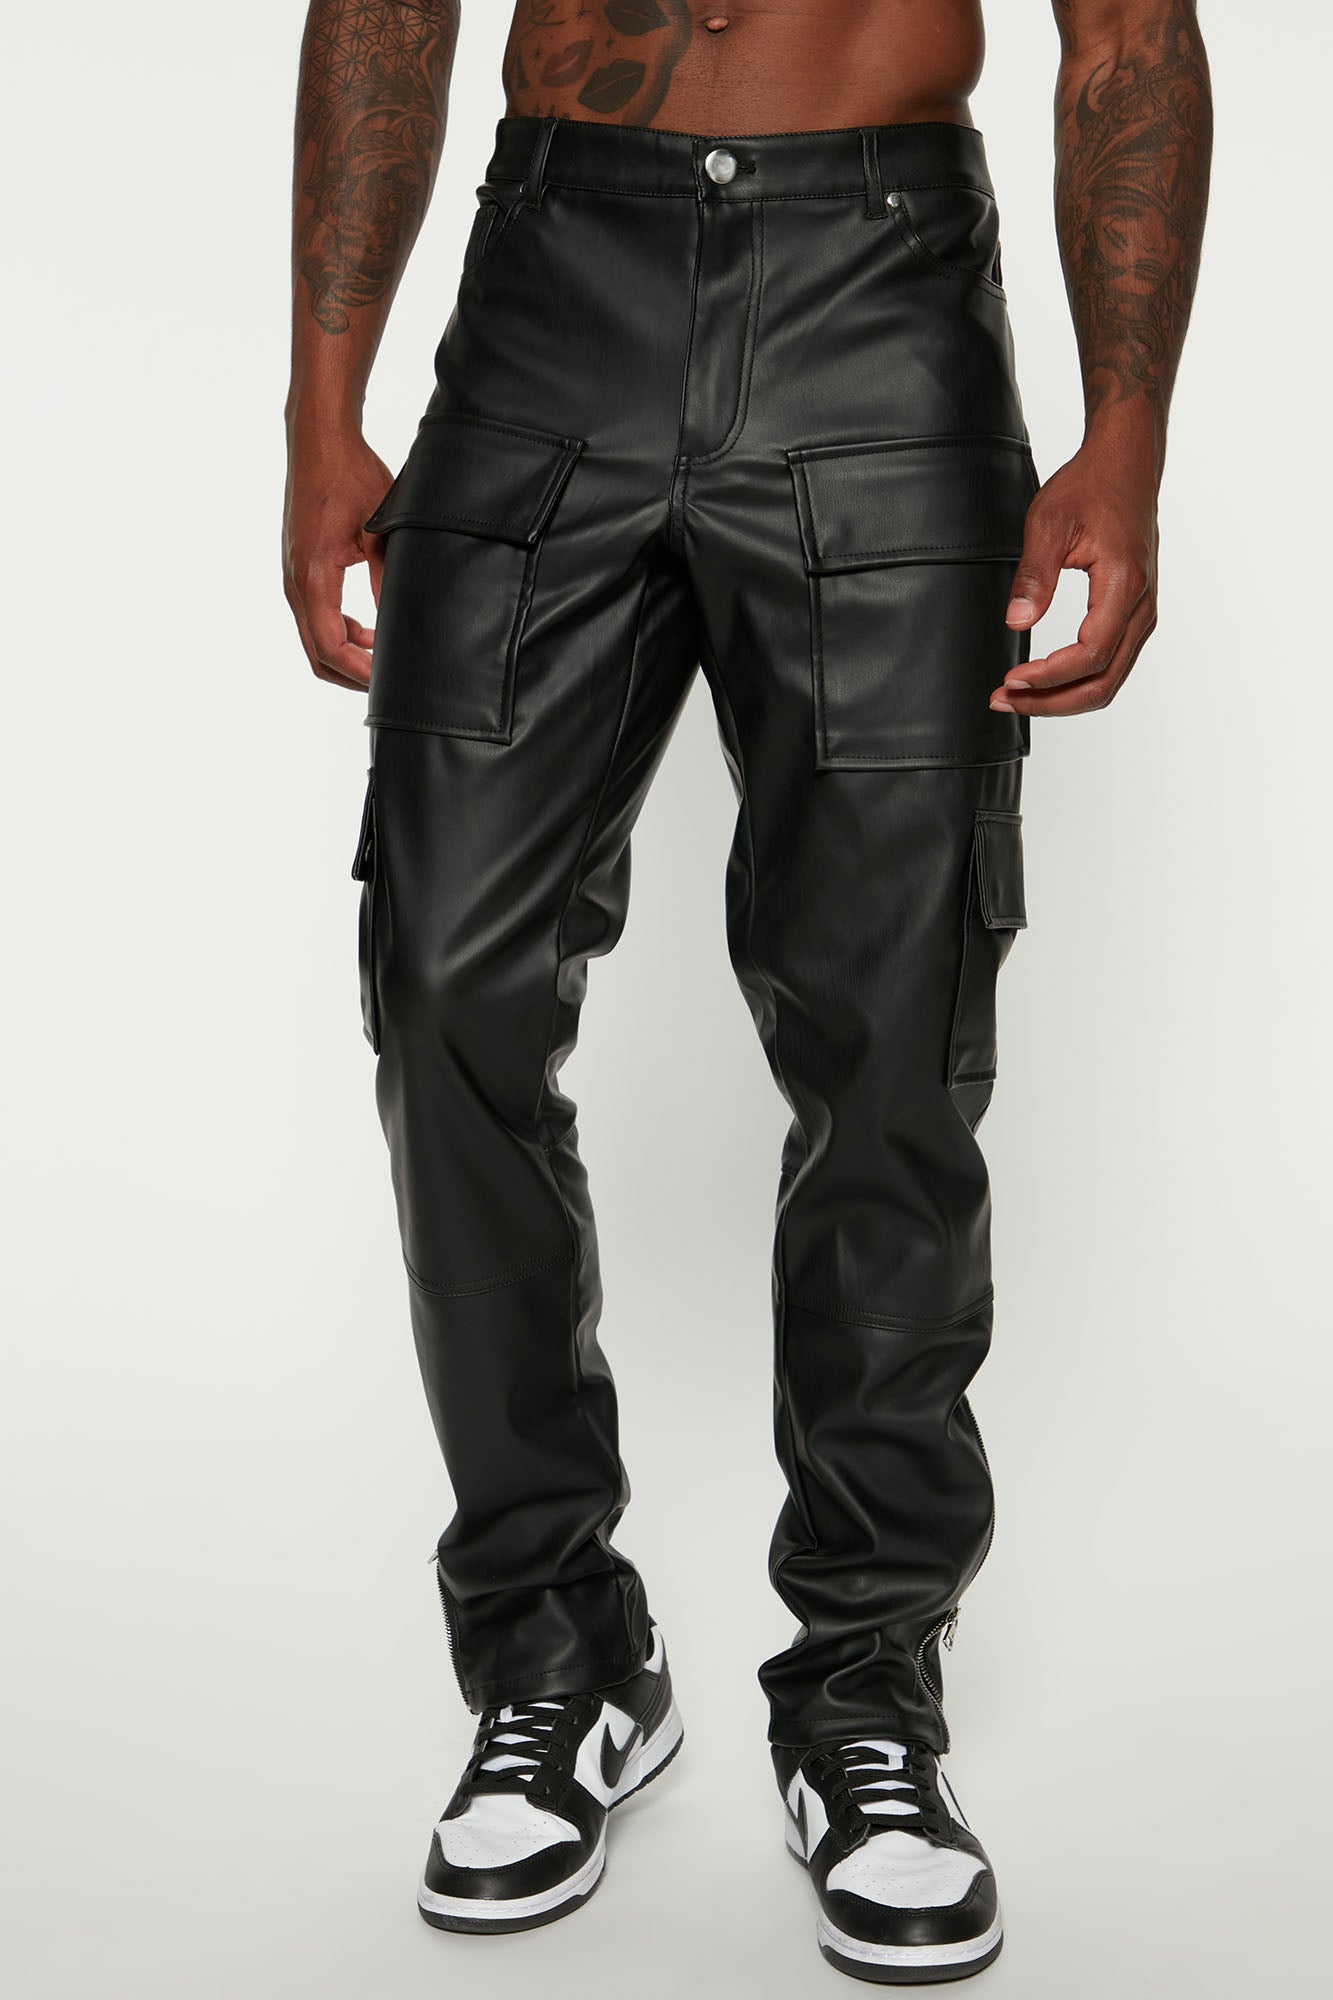 Black Faux Leather Cargo Pants  Cargo pants outfit, Leather pants, Cargo  pants